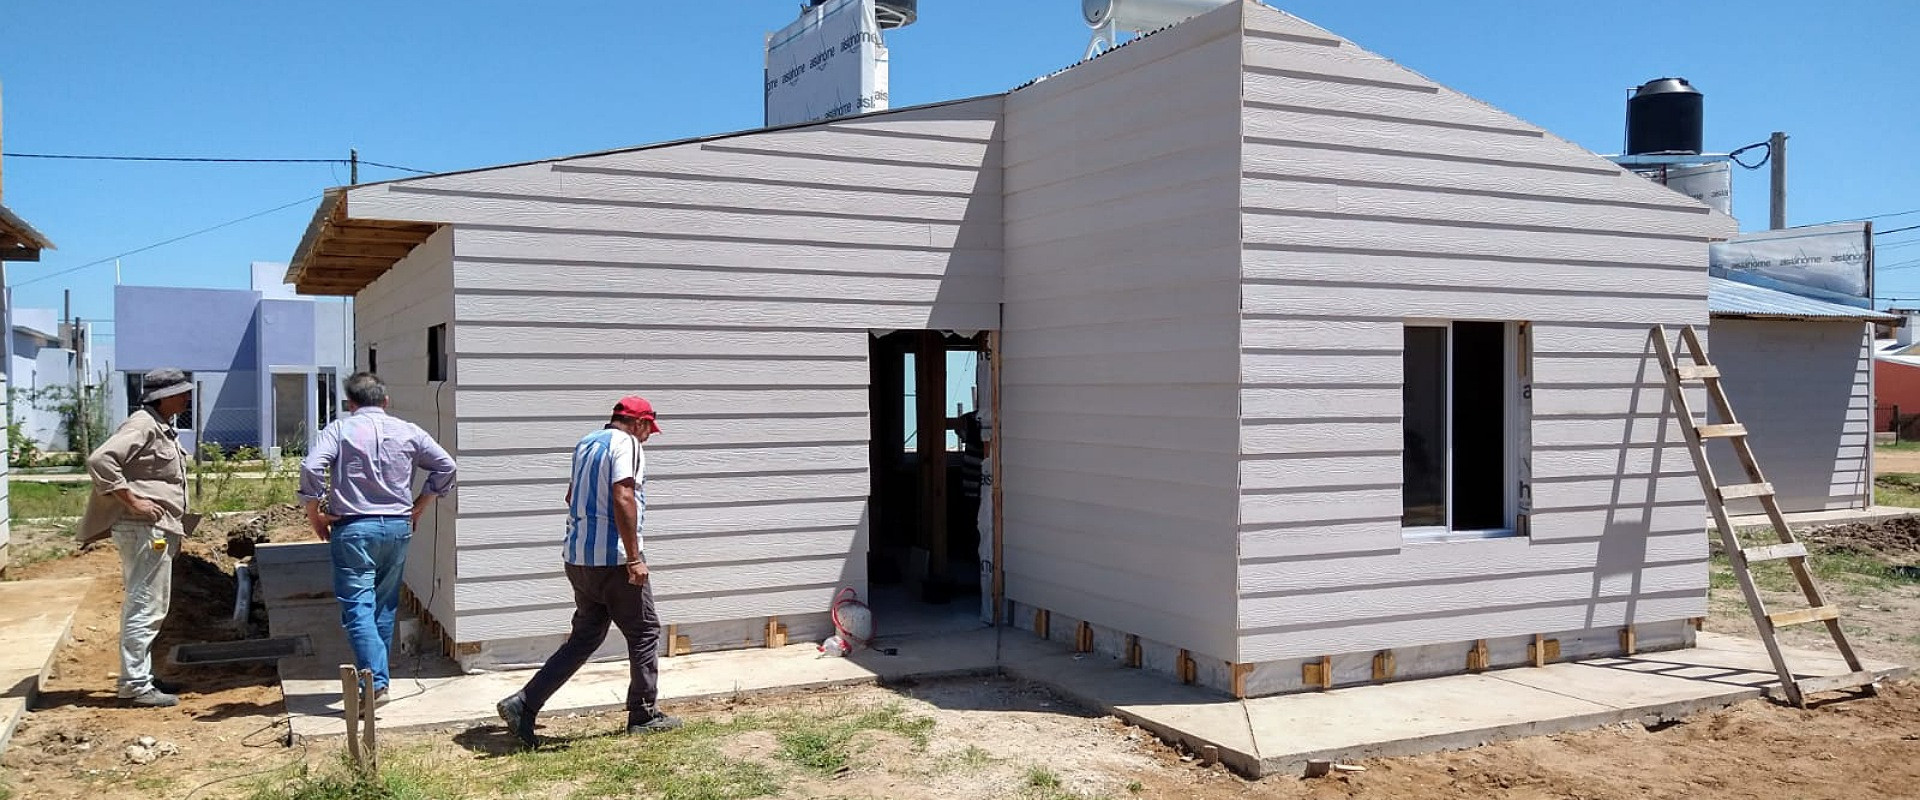 Bisogni recorrió las 12 viviendas de madera que se construyen en Chajarí